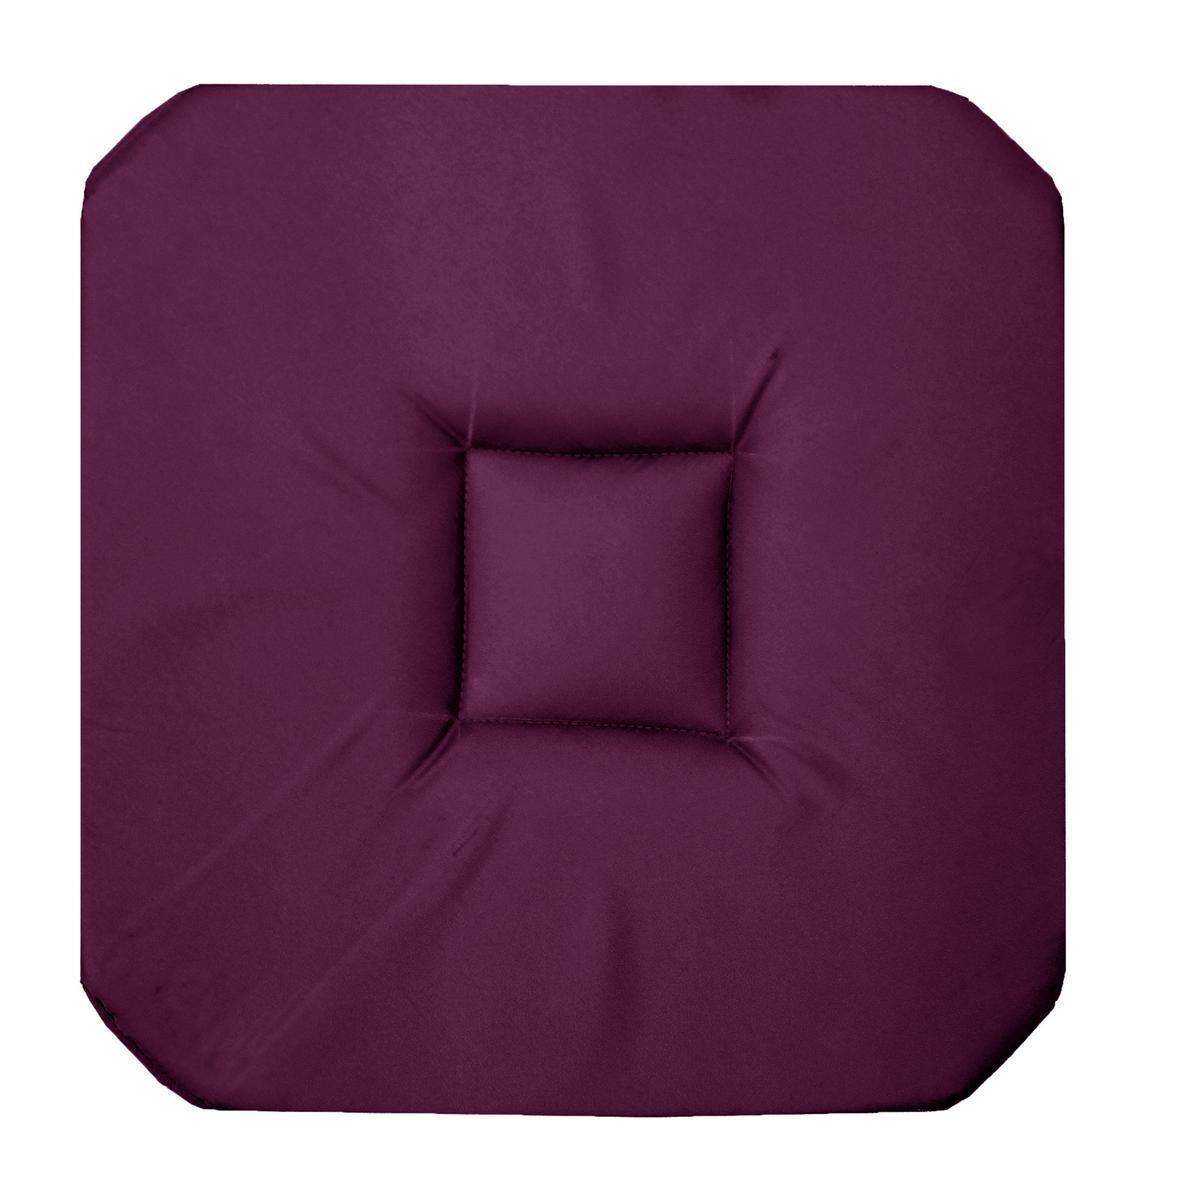 Galette de chaise - 36 x 36 x H 3,5 cm - Violet aubergine